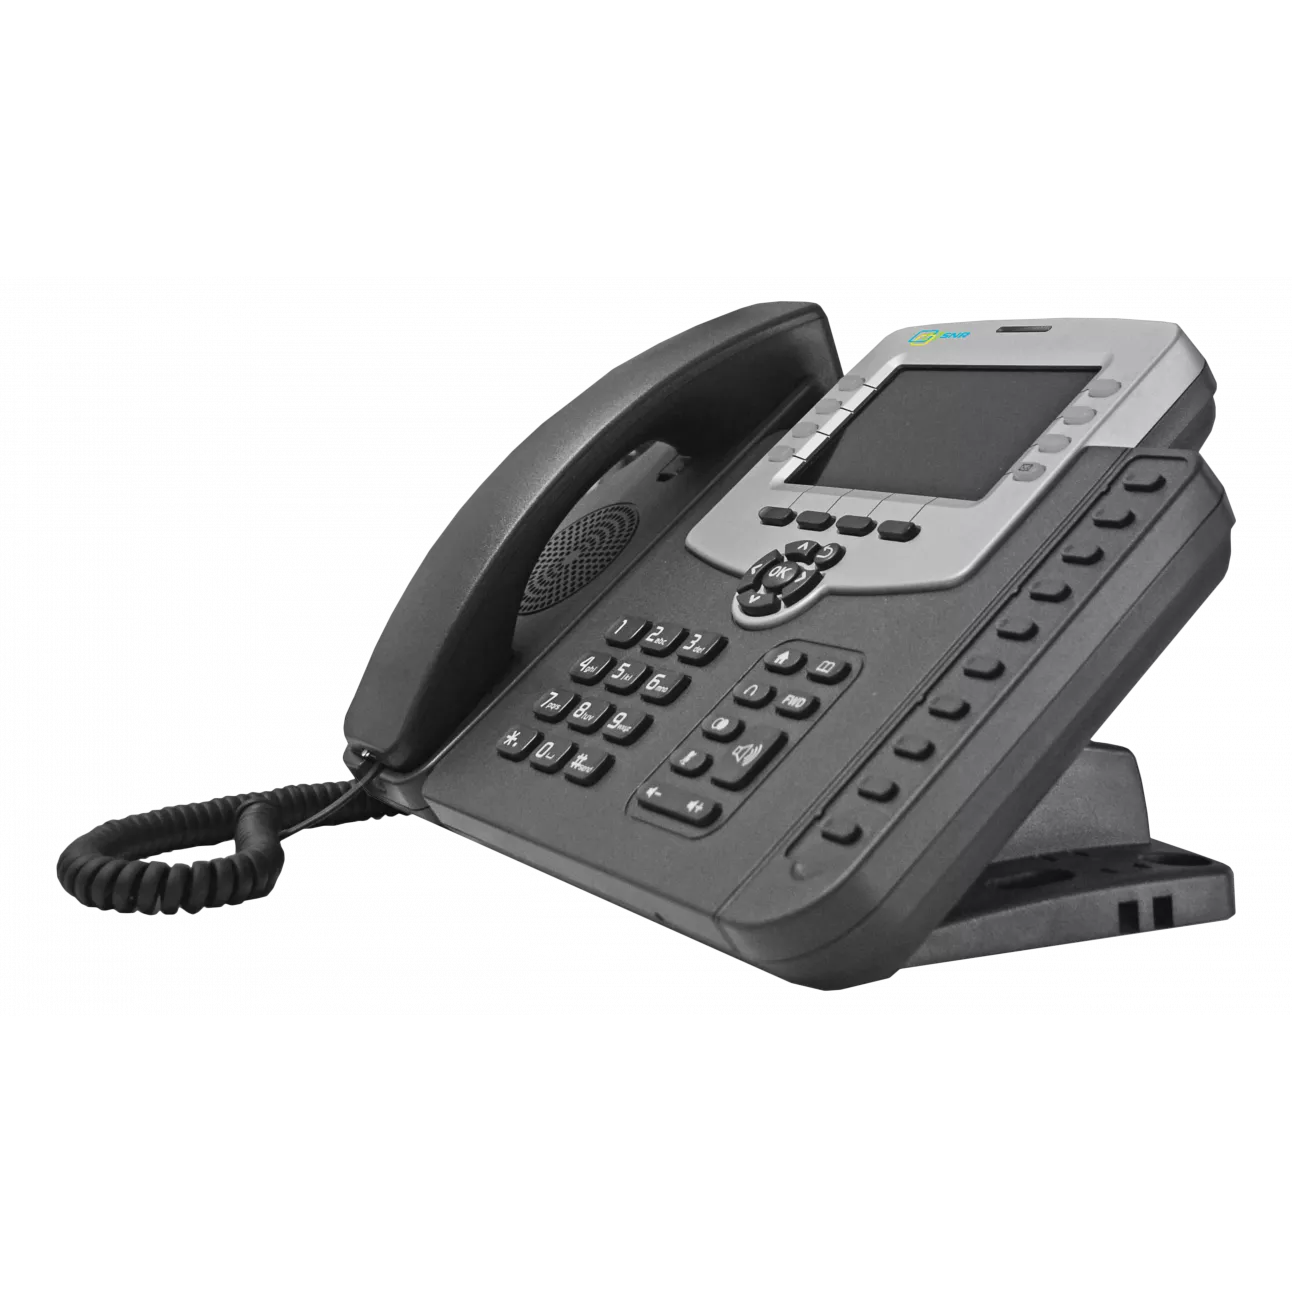 VoIP-телефон SNR SNR-VP-56-P, 6 линий, 6 SIP-аккаунтов, монохромный дисплей, PoE, черный/серебристый б/у, после ремонта, следы эксплуатации, комплект полный